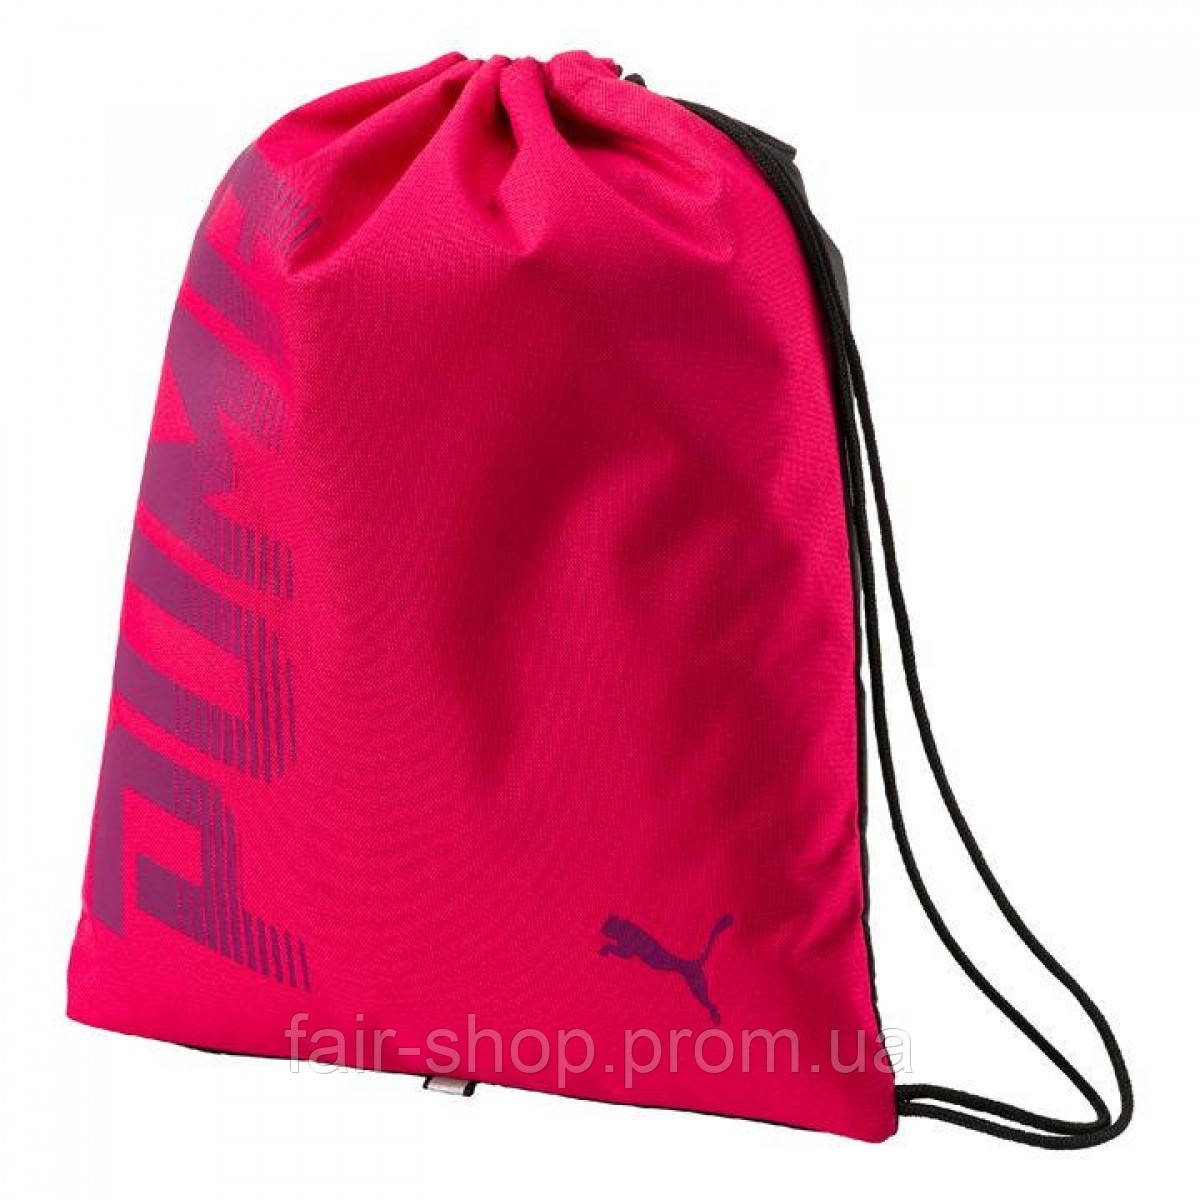 Рюкзак для спортивной формы Puma Pioneer Pink, оригінал. Доставка від 14 днів